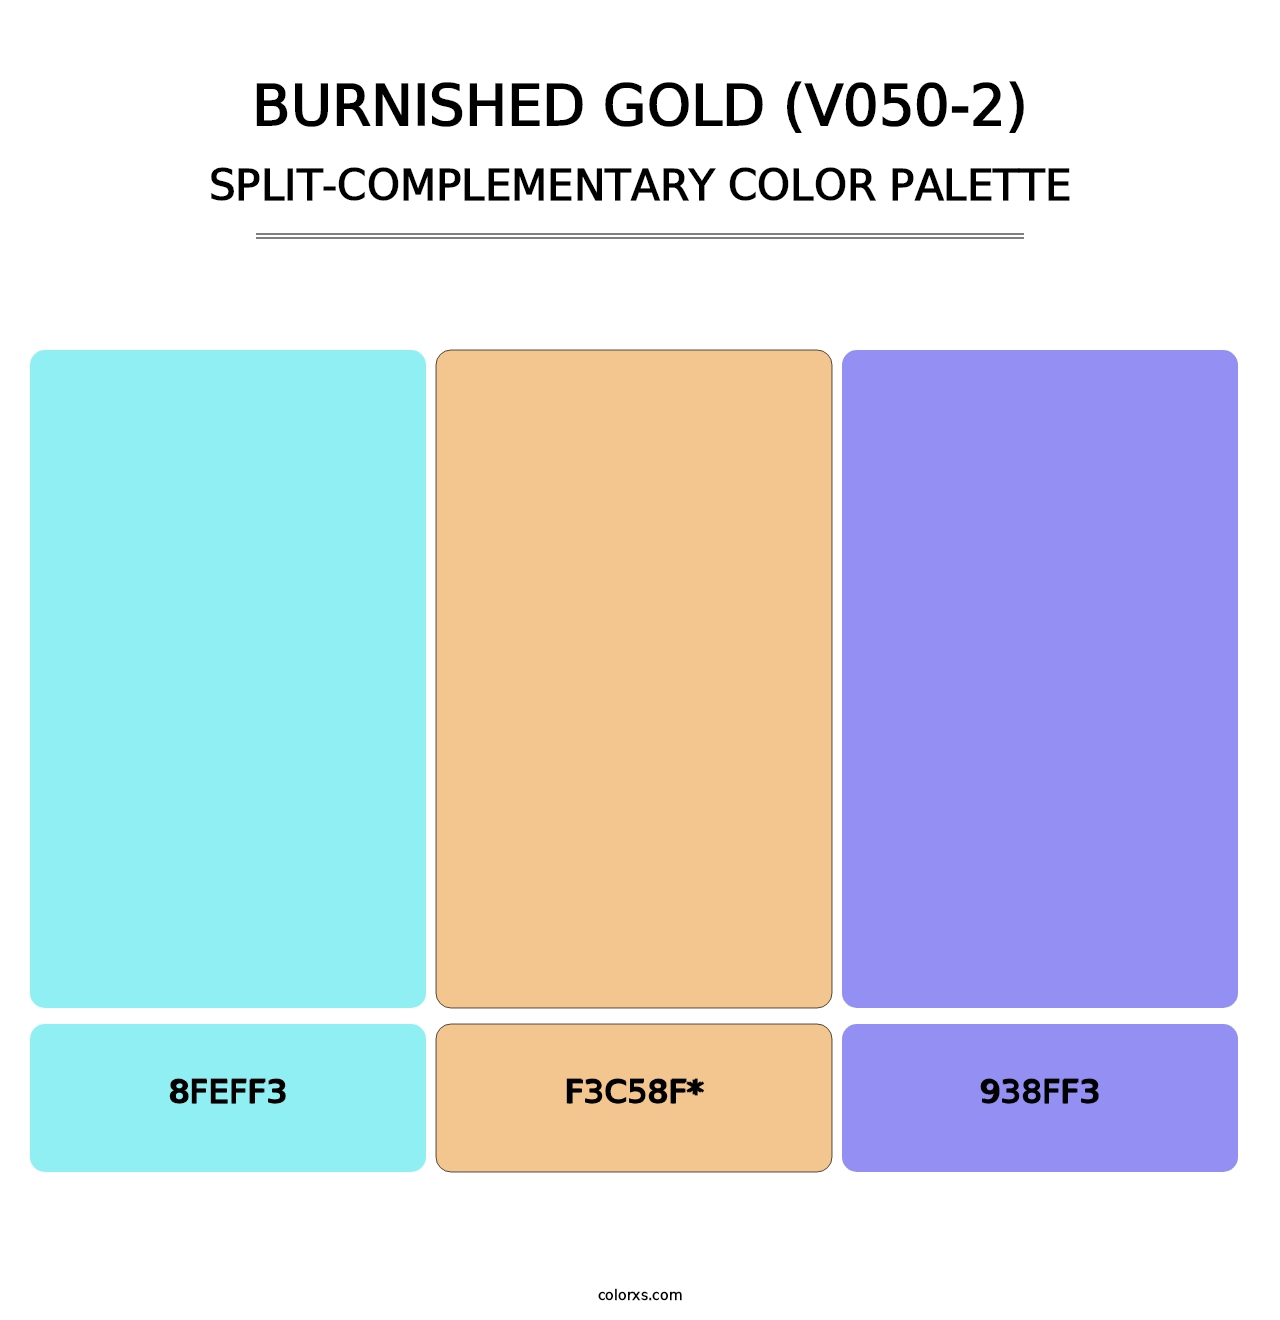 Burnished Gold (V050-2) - Split-Complementary Color Palette